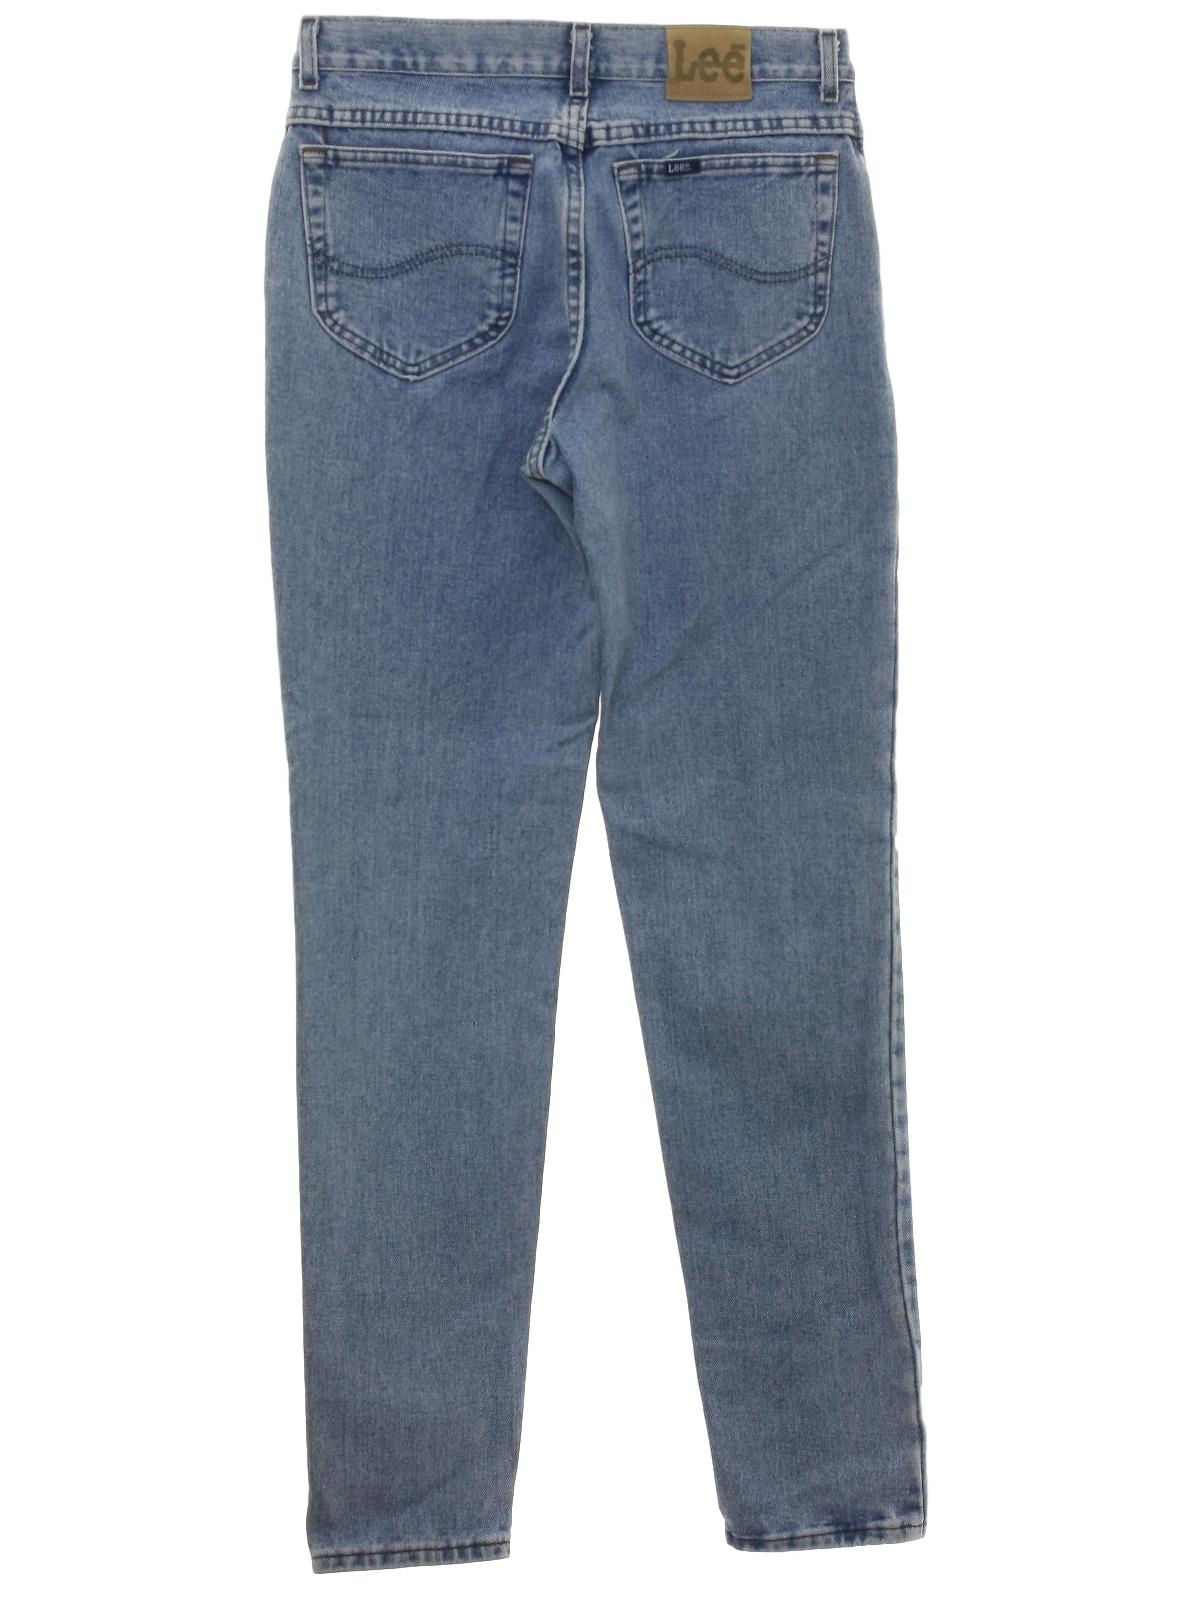 Retro 1980s Pants: 80s -Lee- Womens blue cotton denim denim jeans pants ...